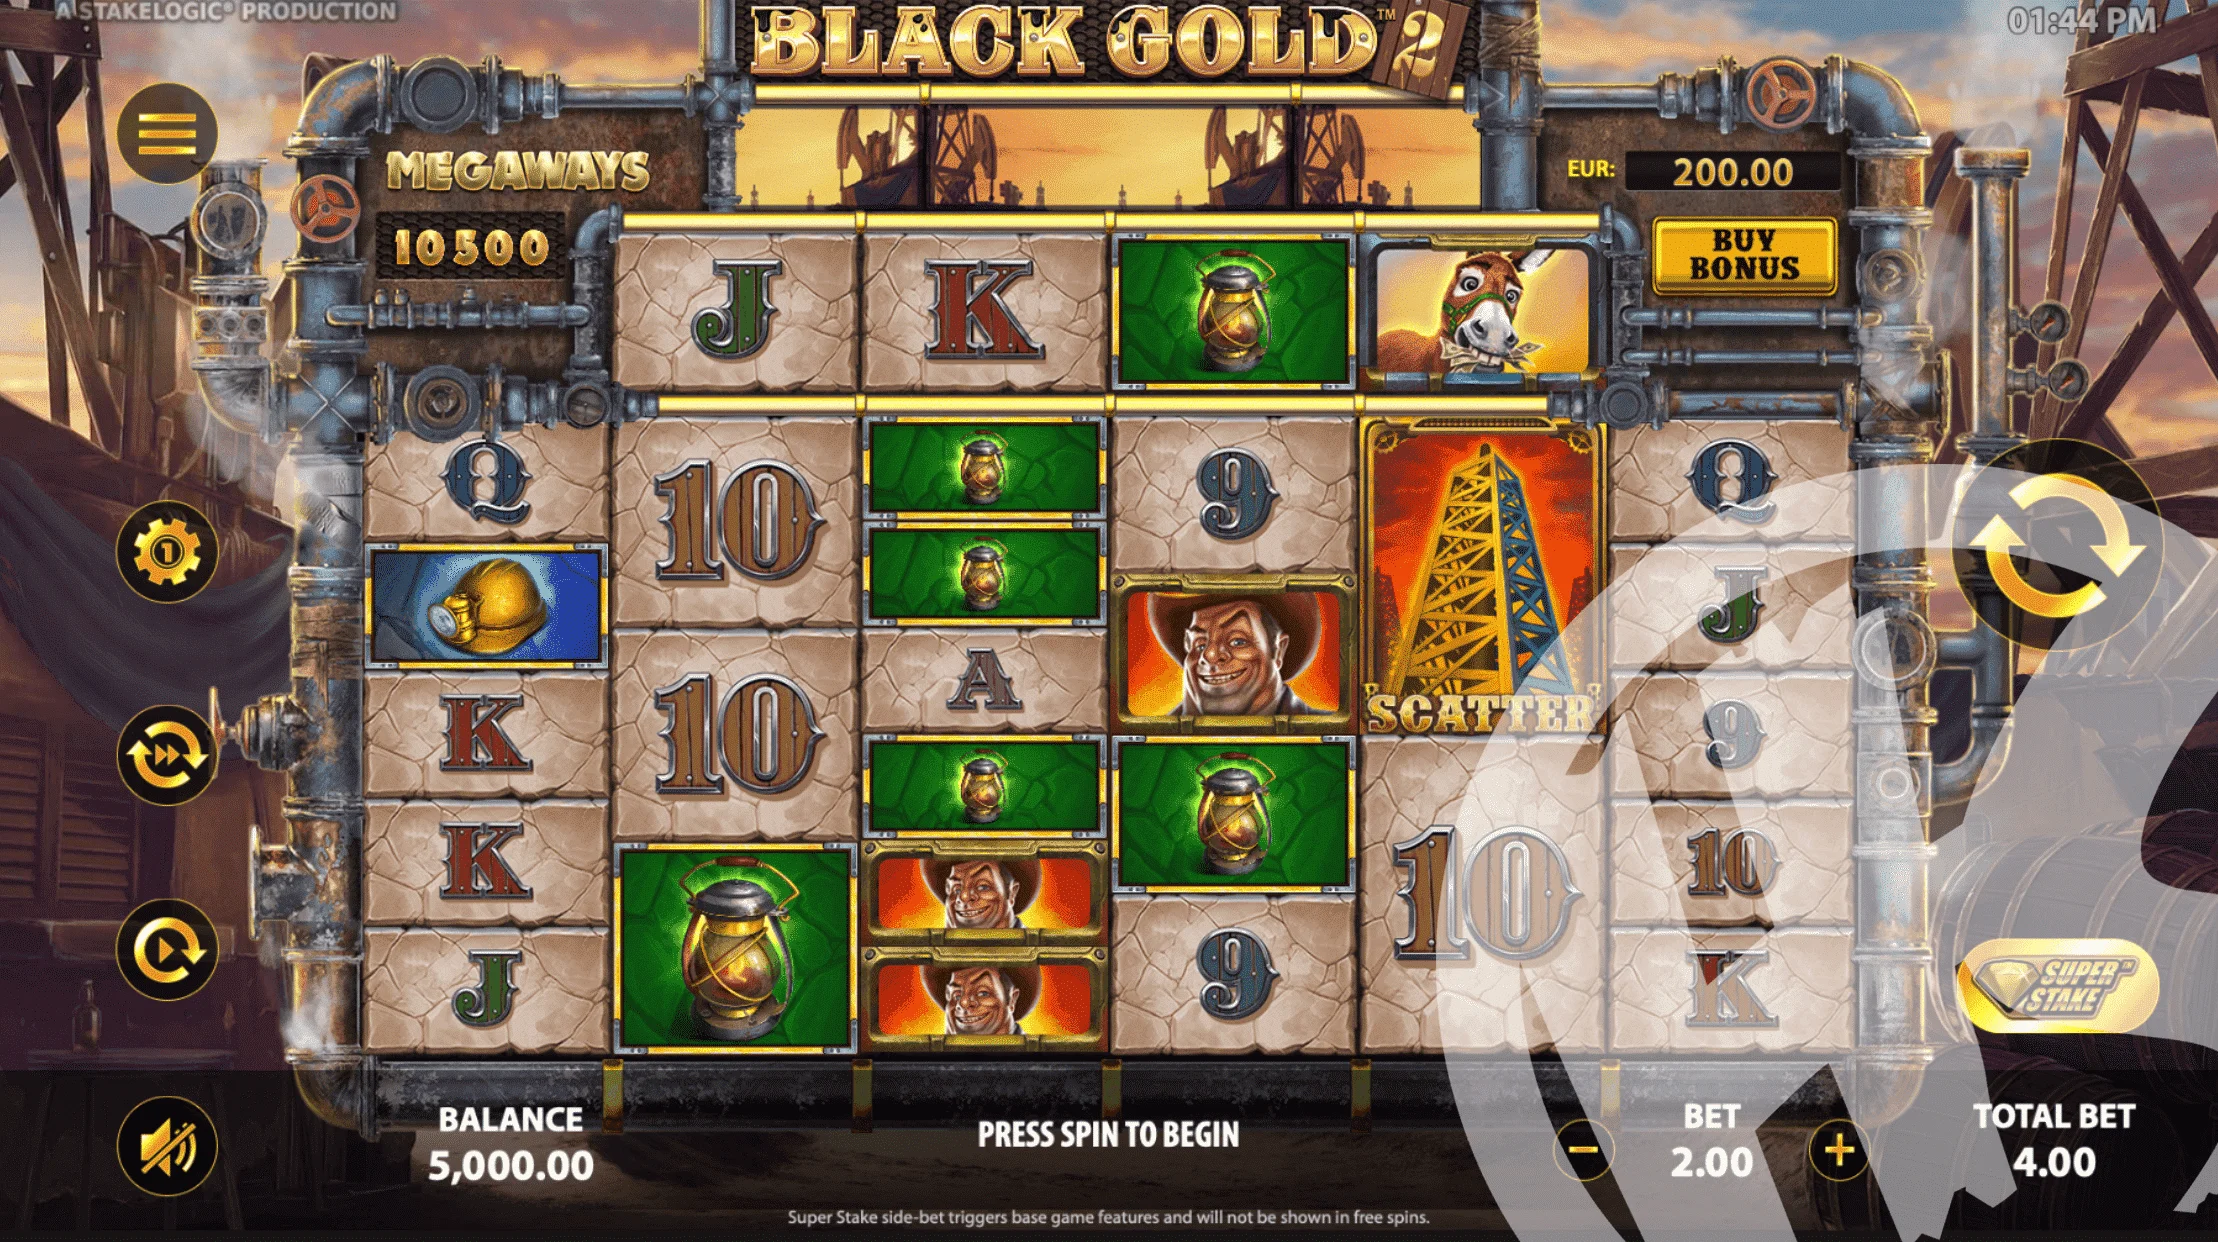 Black Gold 2 Megaways Base Game